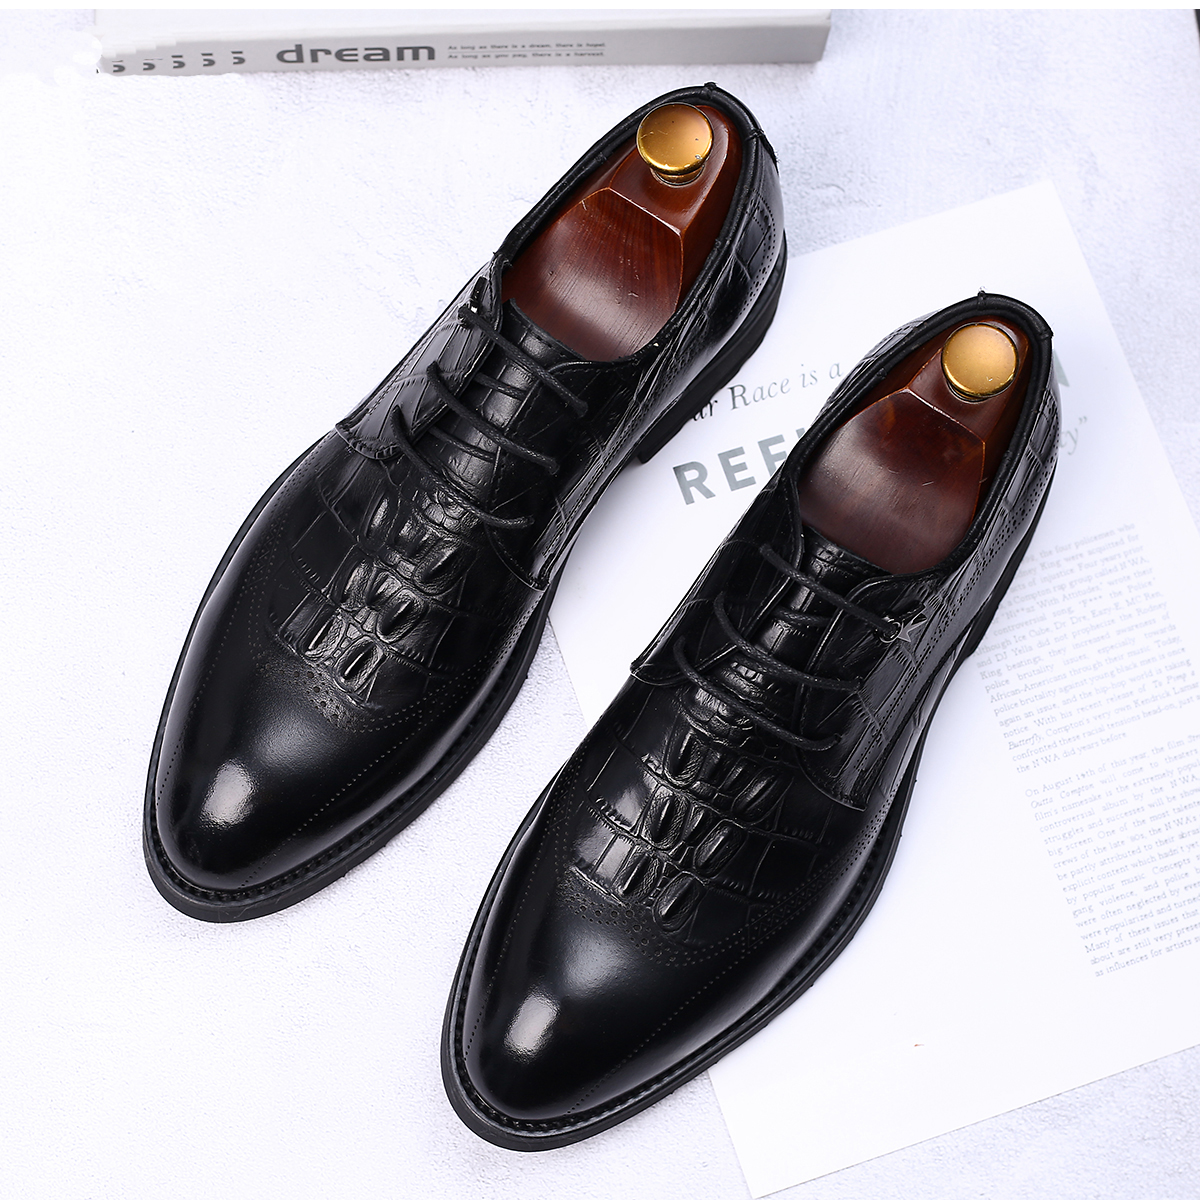 2022 new leather comfortable lace-up shoes men's black fashion shoes business dress men's shoes